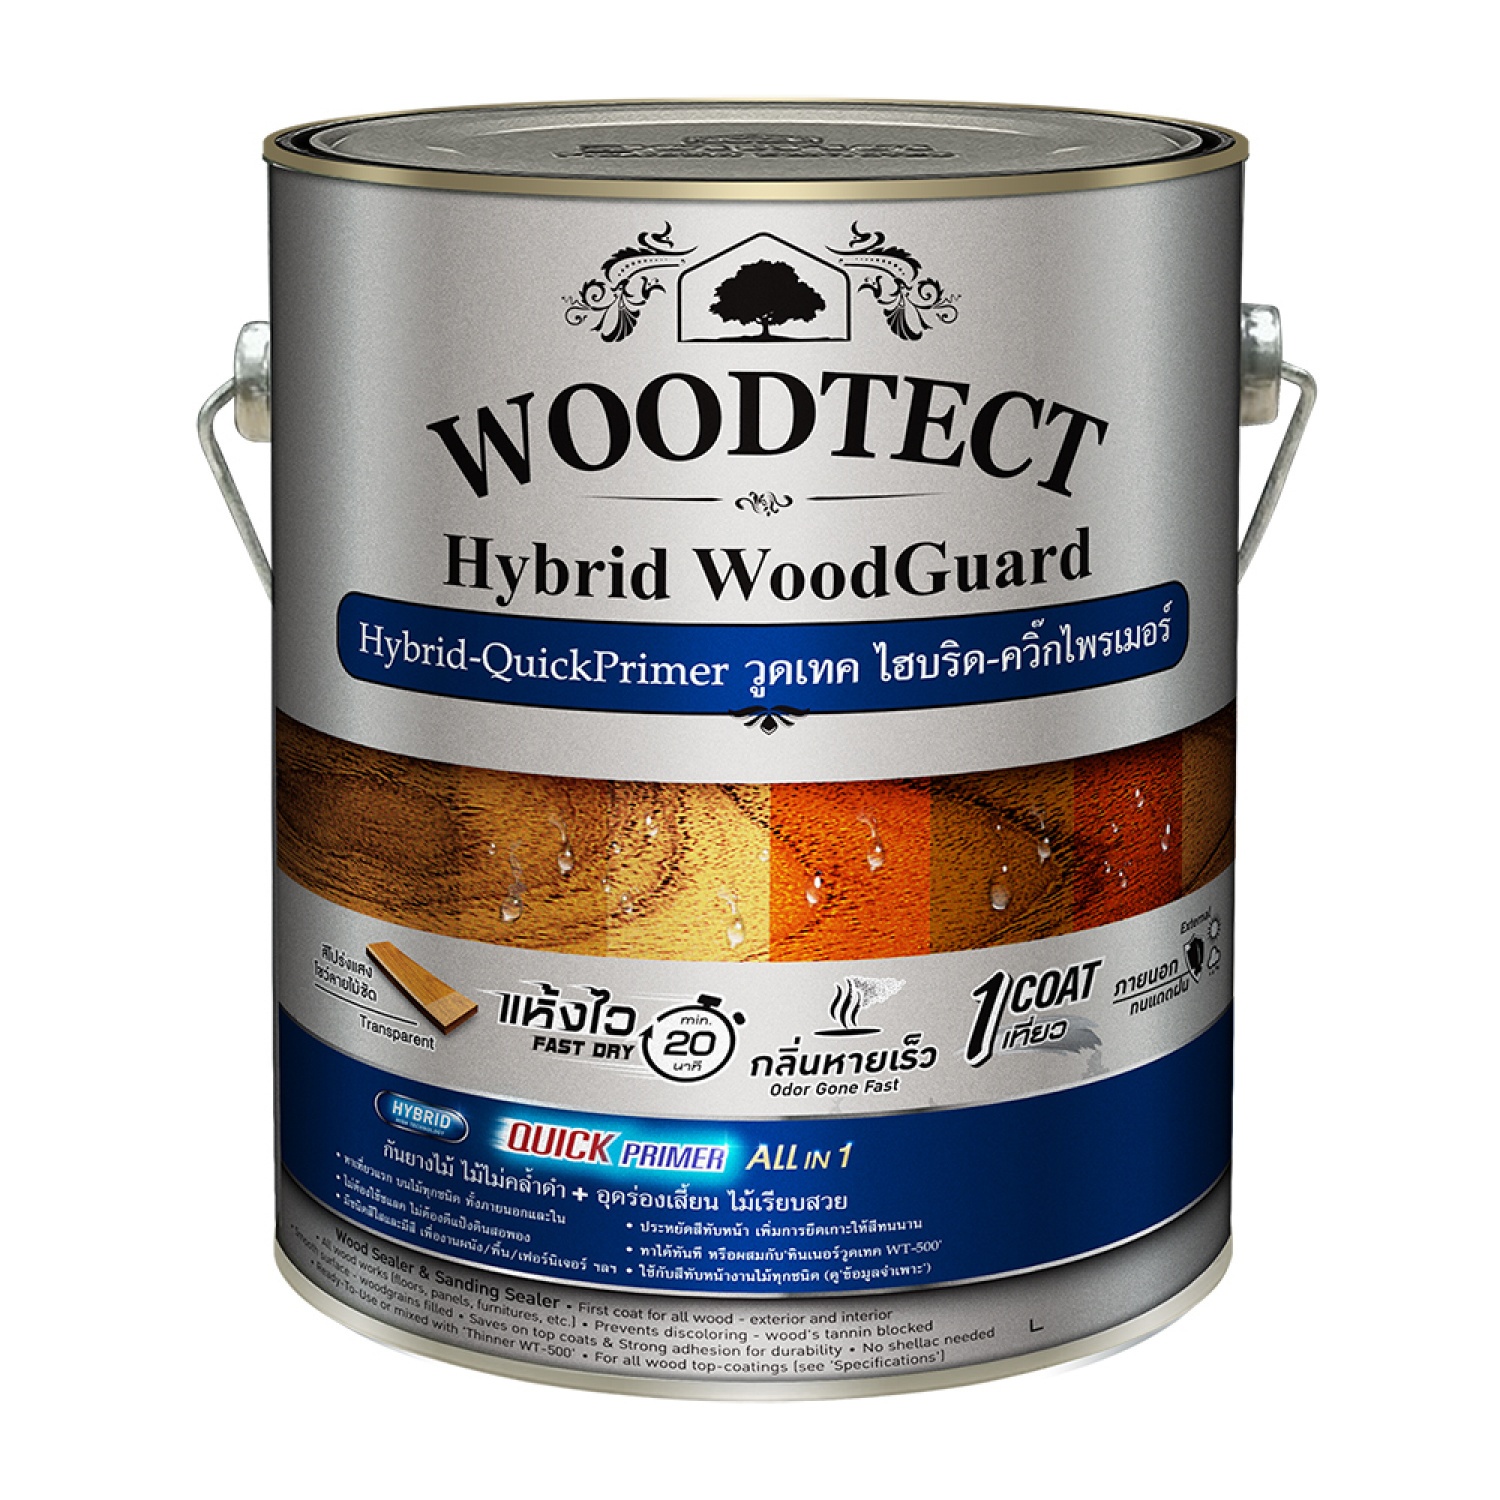  Woodtect วูดเทค ไฮบริด คว็กคัลเลอร์ WW-5000 กป. สีใส